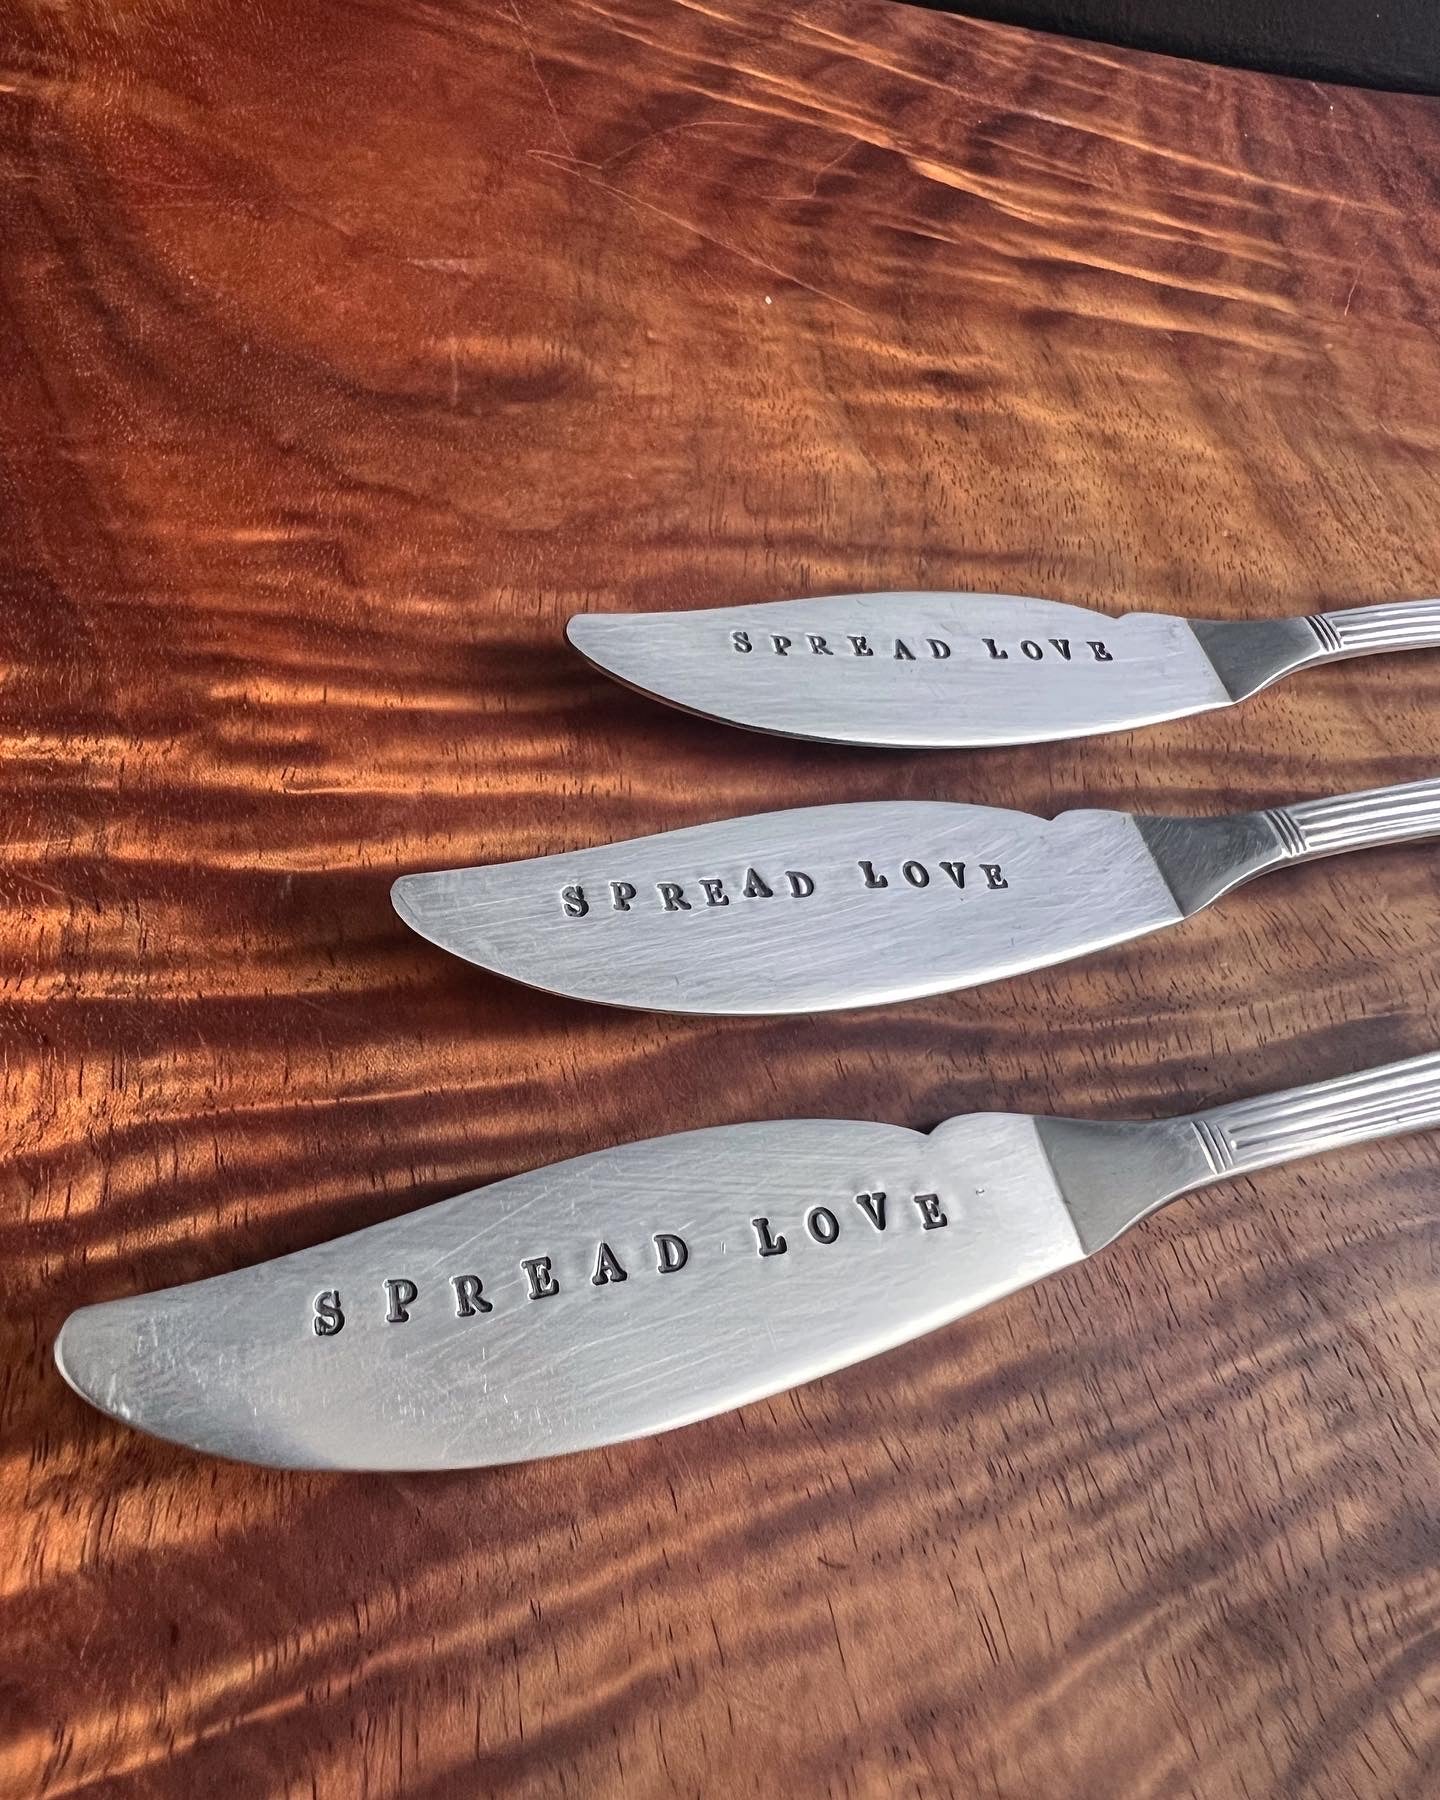 Spread Love ~ letter-stamped butter knife spreader